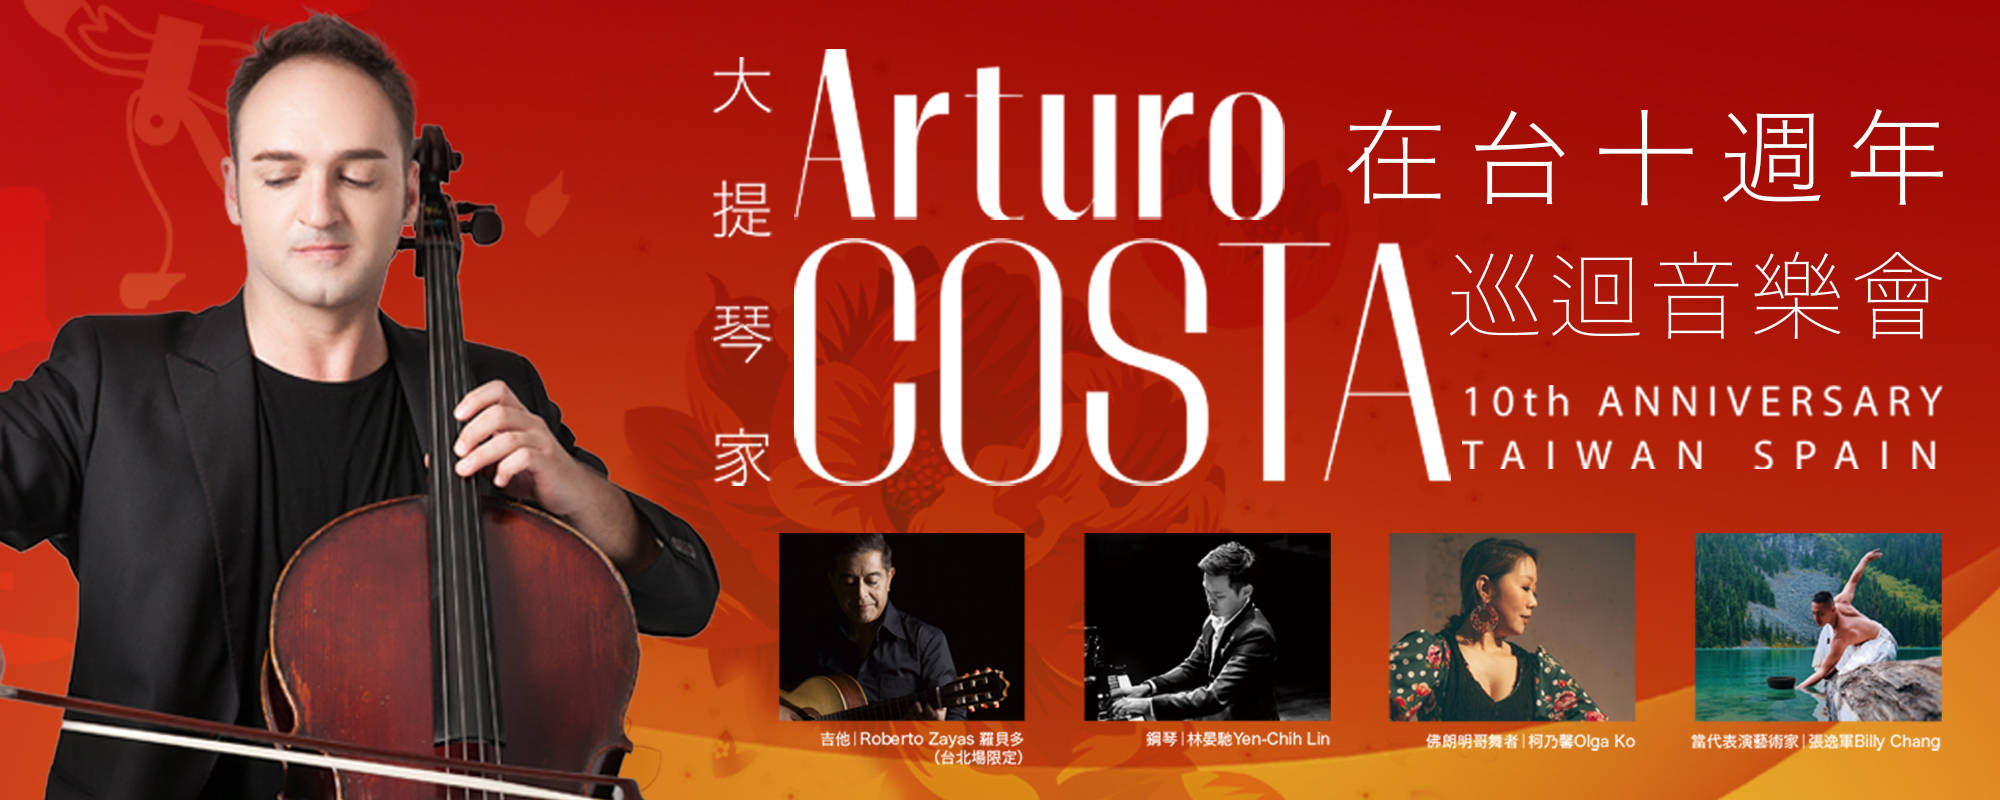 《大提琴家Arturo COSTA在台十週年巡迴音樂會》